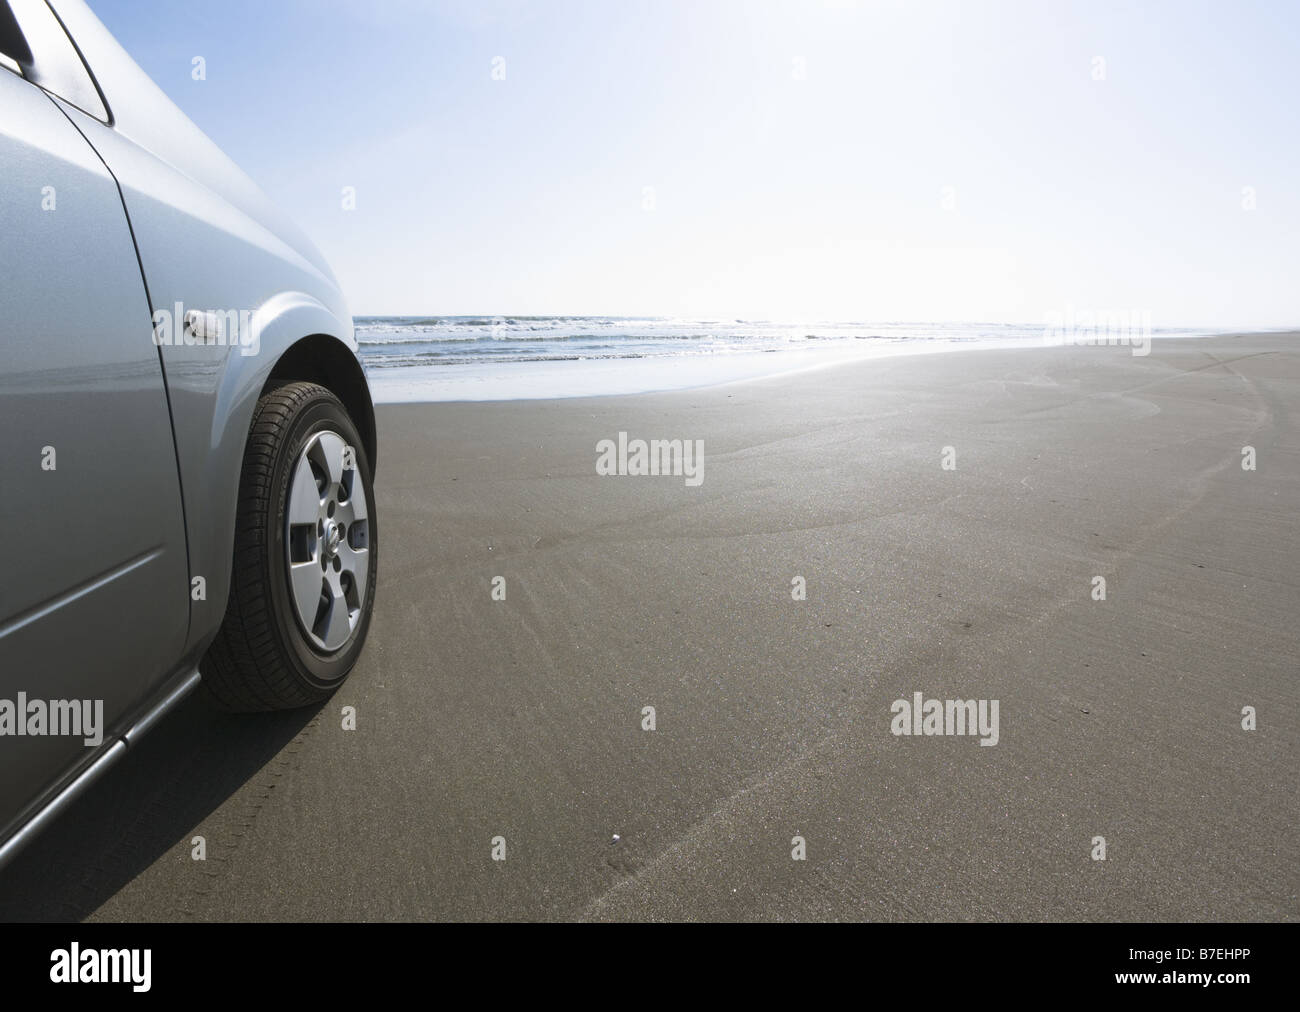 Car on a sandy beach Stock Photo